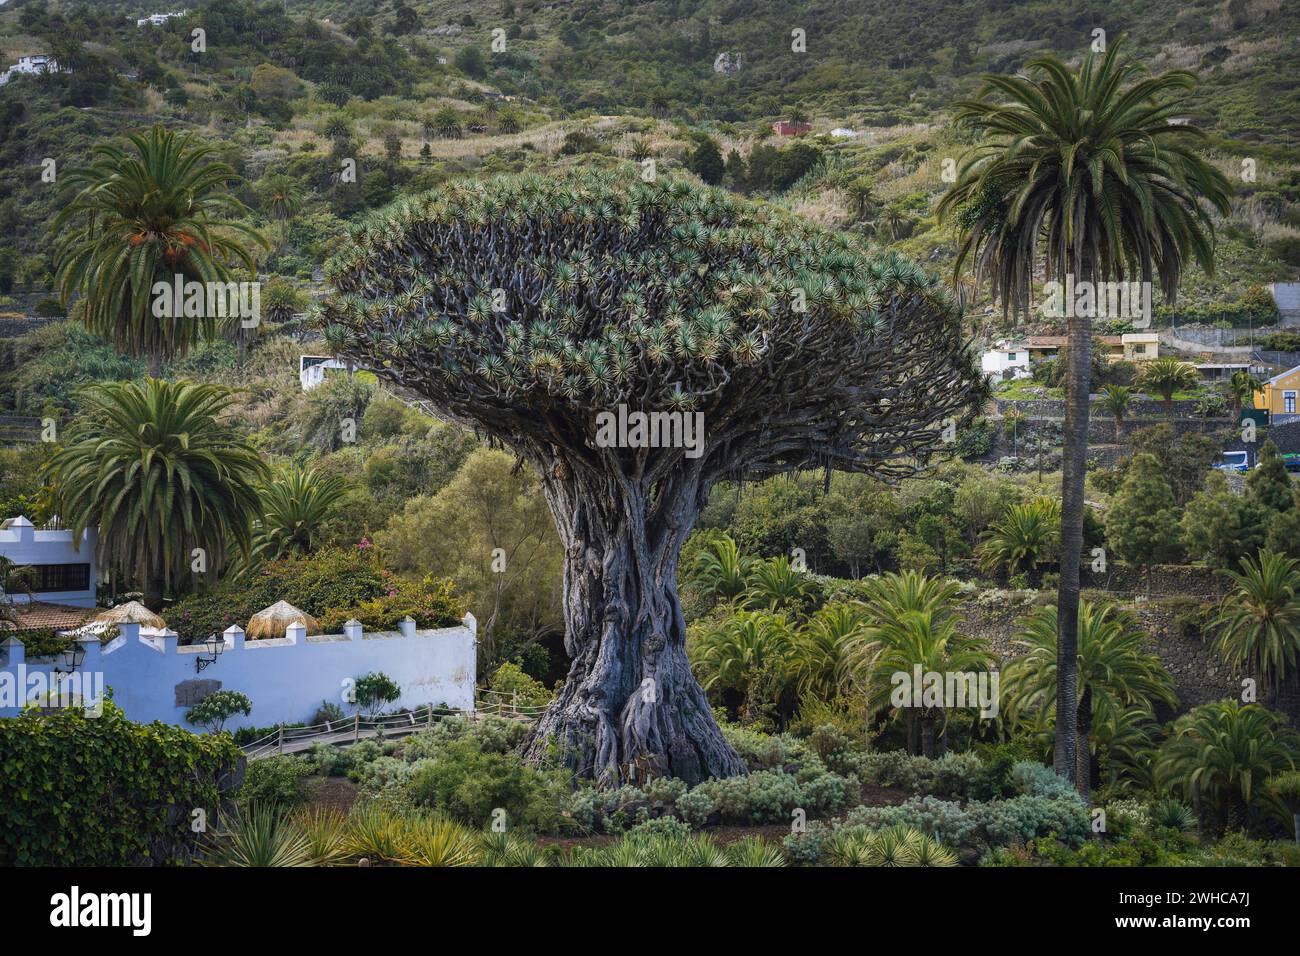 Uralter Drachenbaum in Icod de los Vinos Stadt auf Teneriffa, Kanarischen Inseln, Spanien. Berühmte Drago im Parque del Drago. Symbol von Teneriffa, der größten und ältesten lebenden Dracaena Draco der Welt. Stockfoto